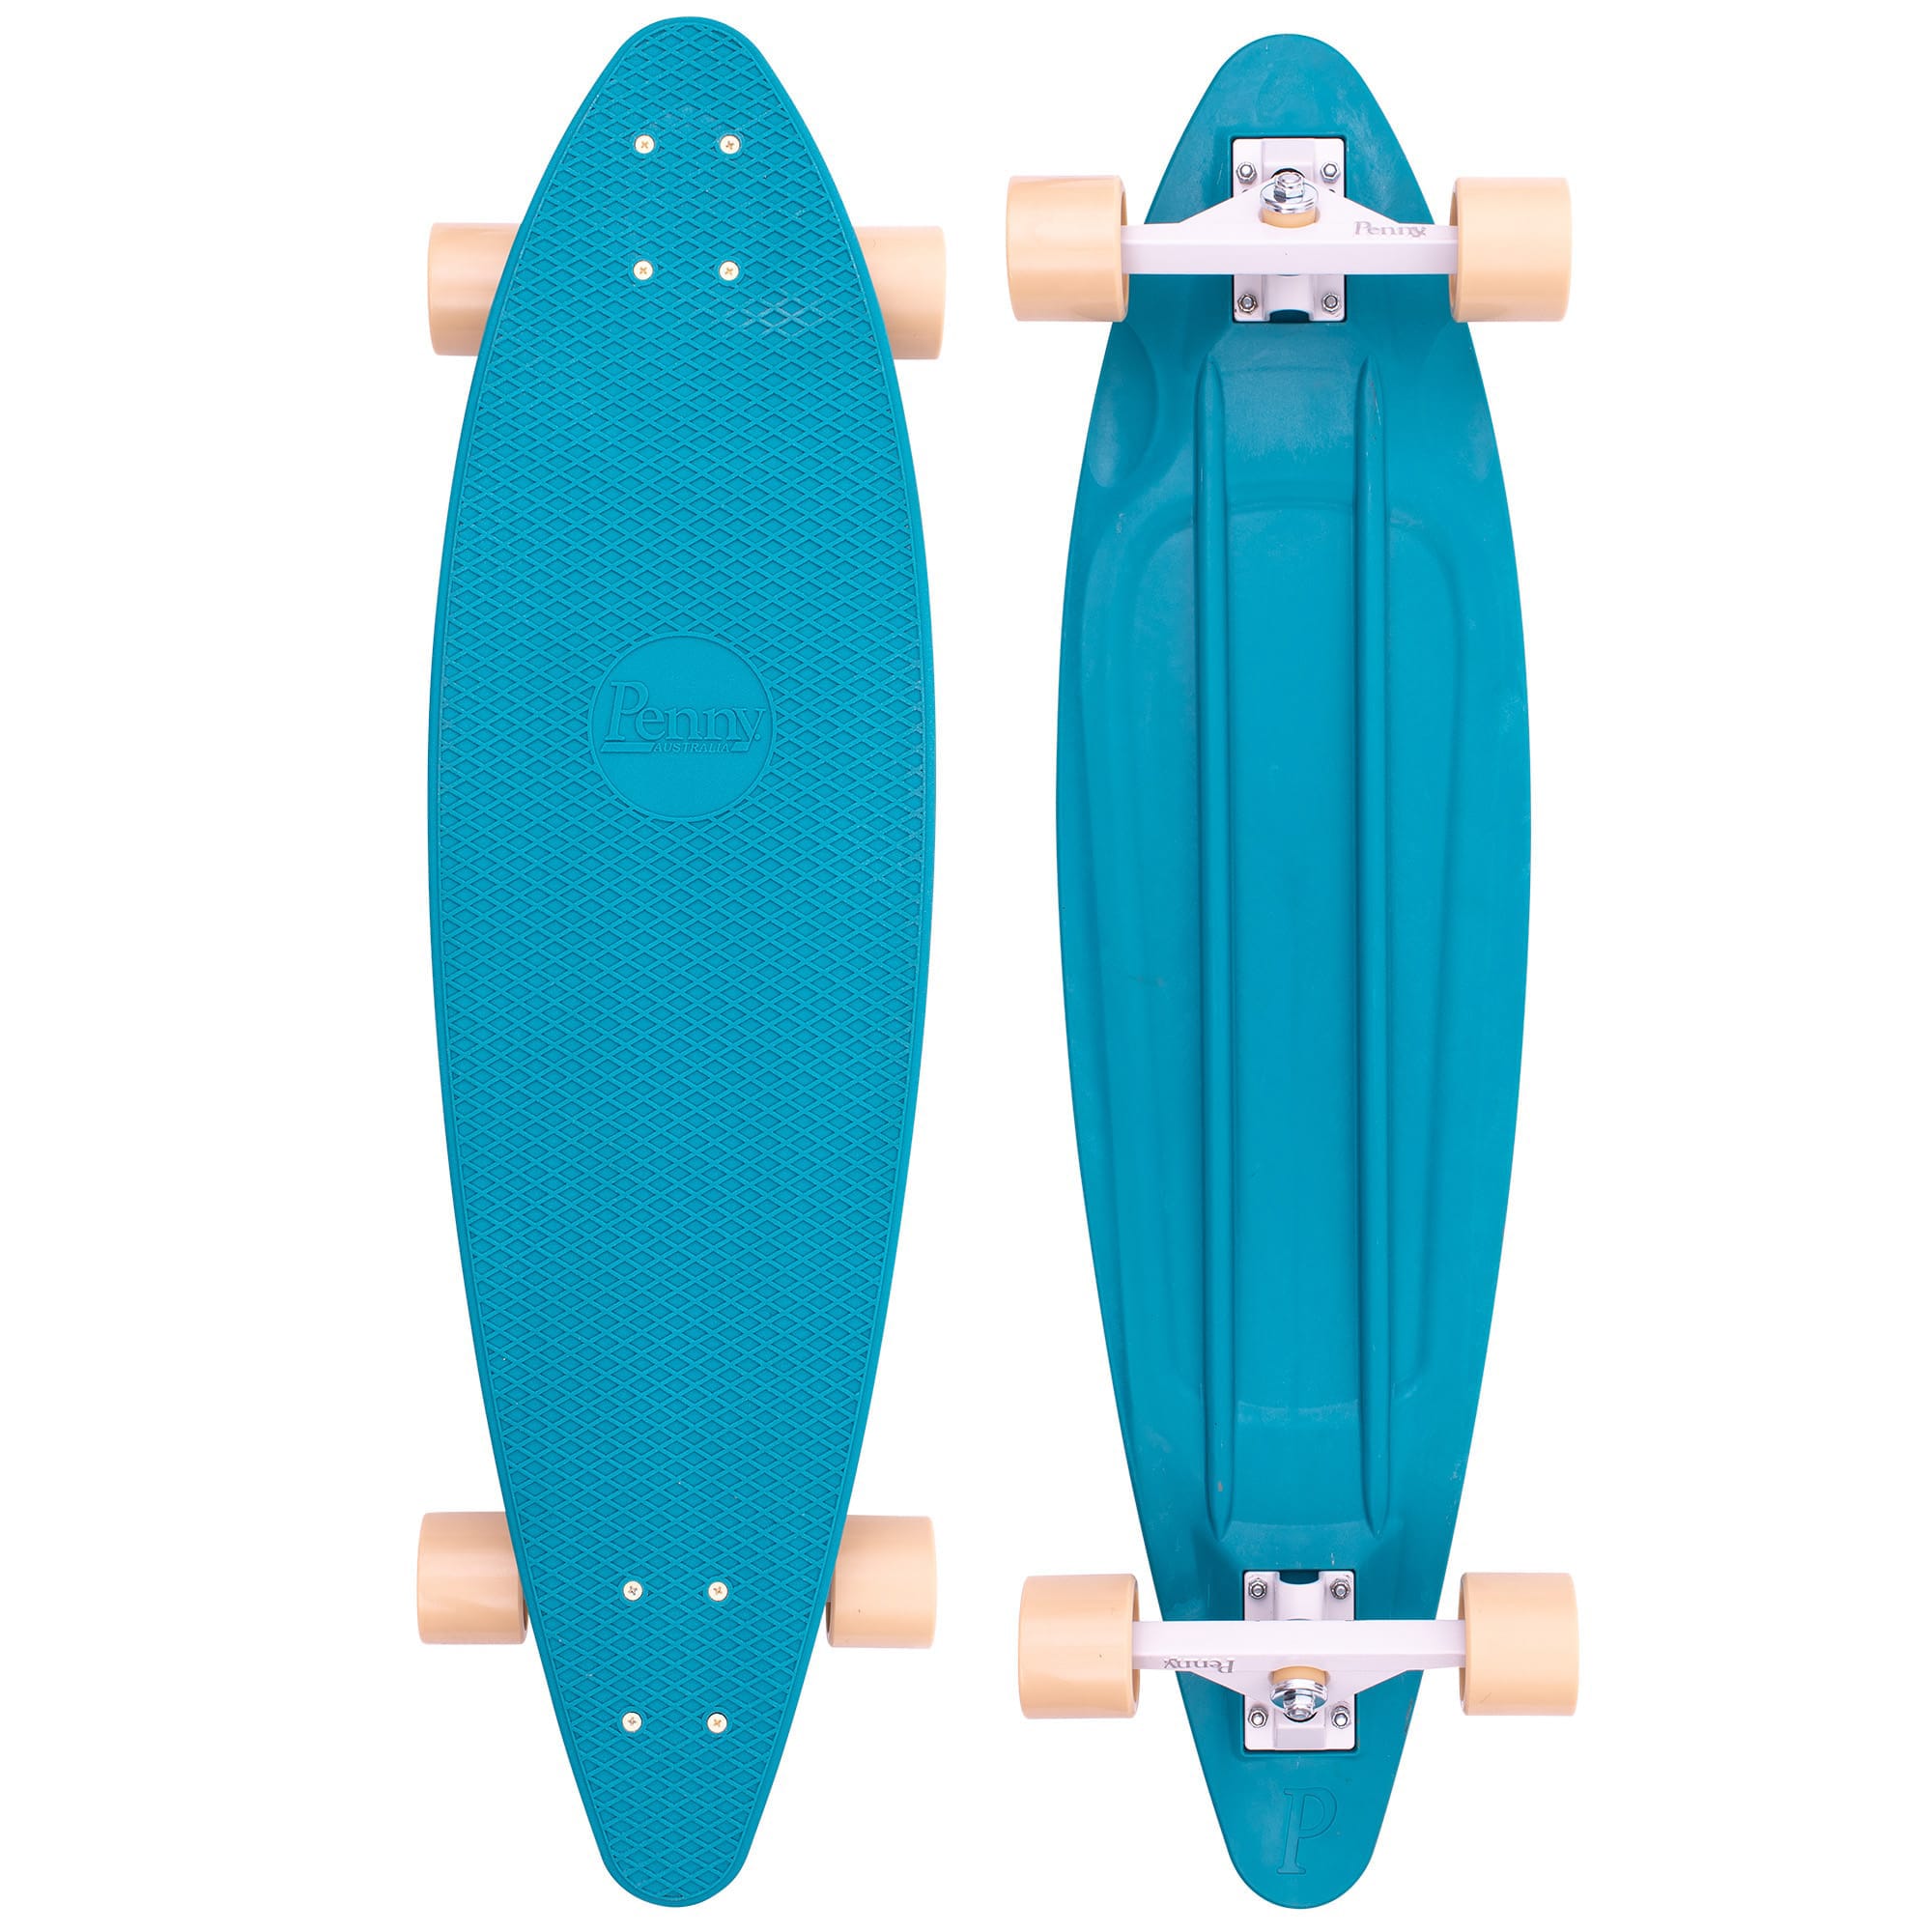 Ocean 36" Longboard Complete Cruiser Skateboard by Penny Skateboards